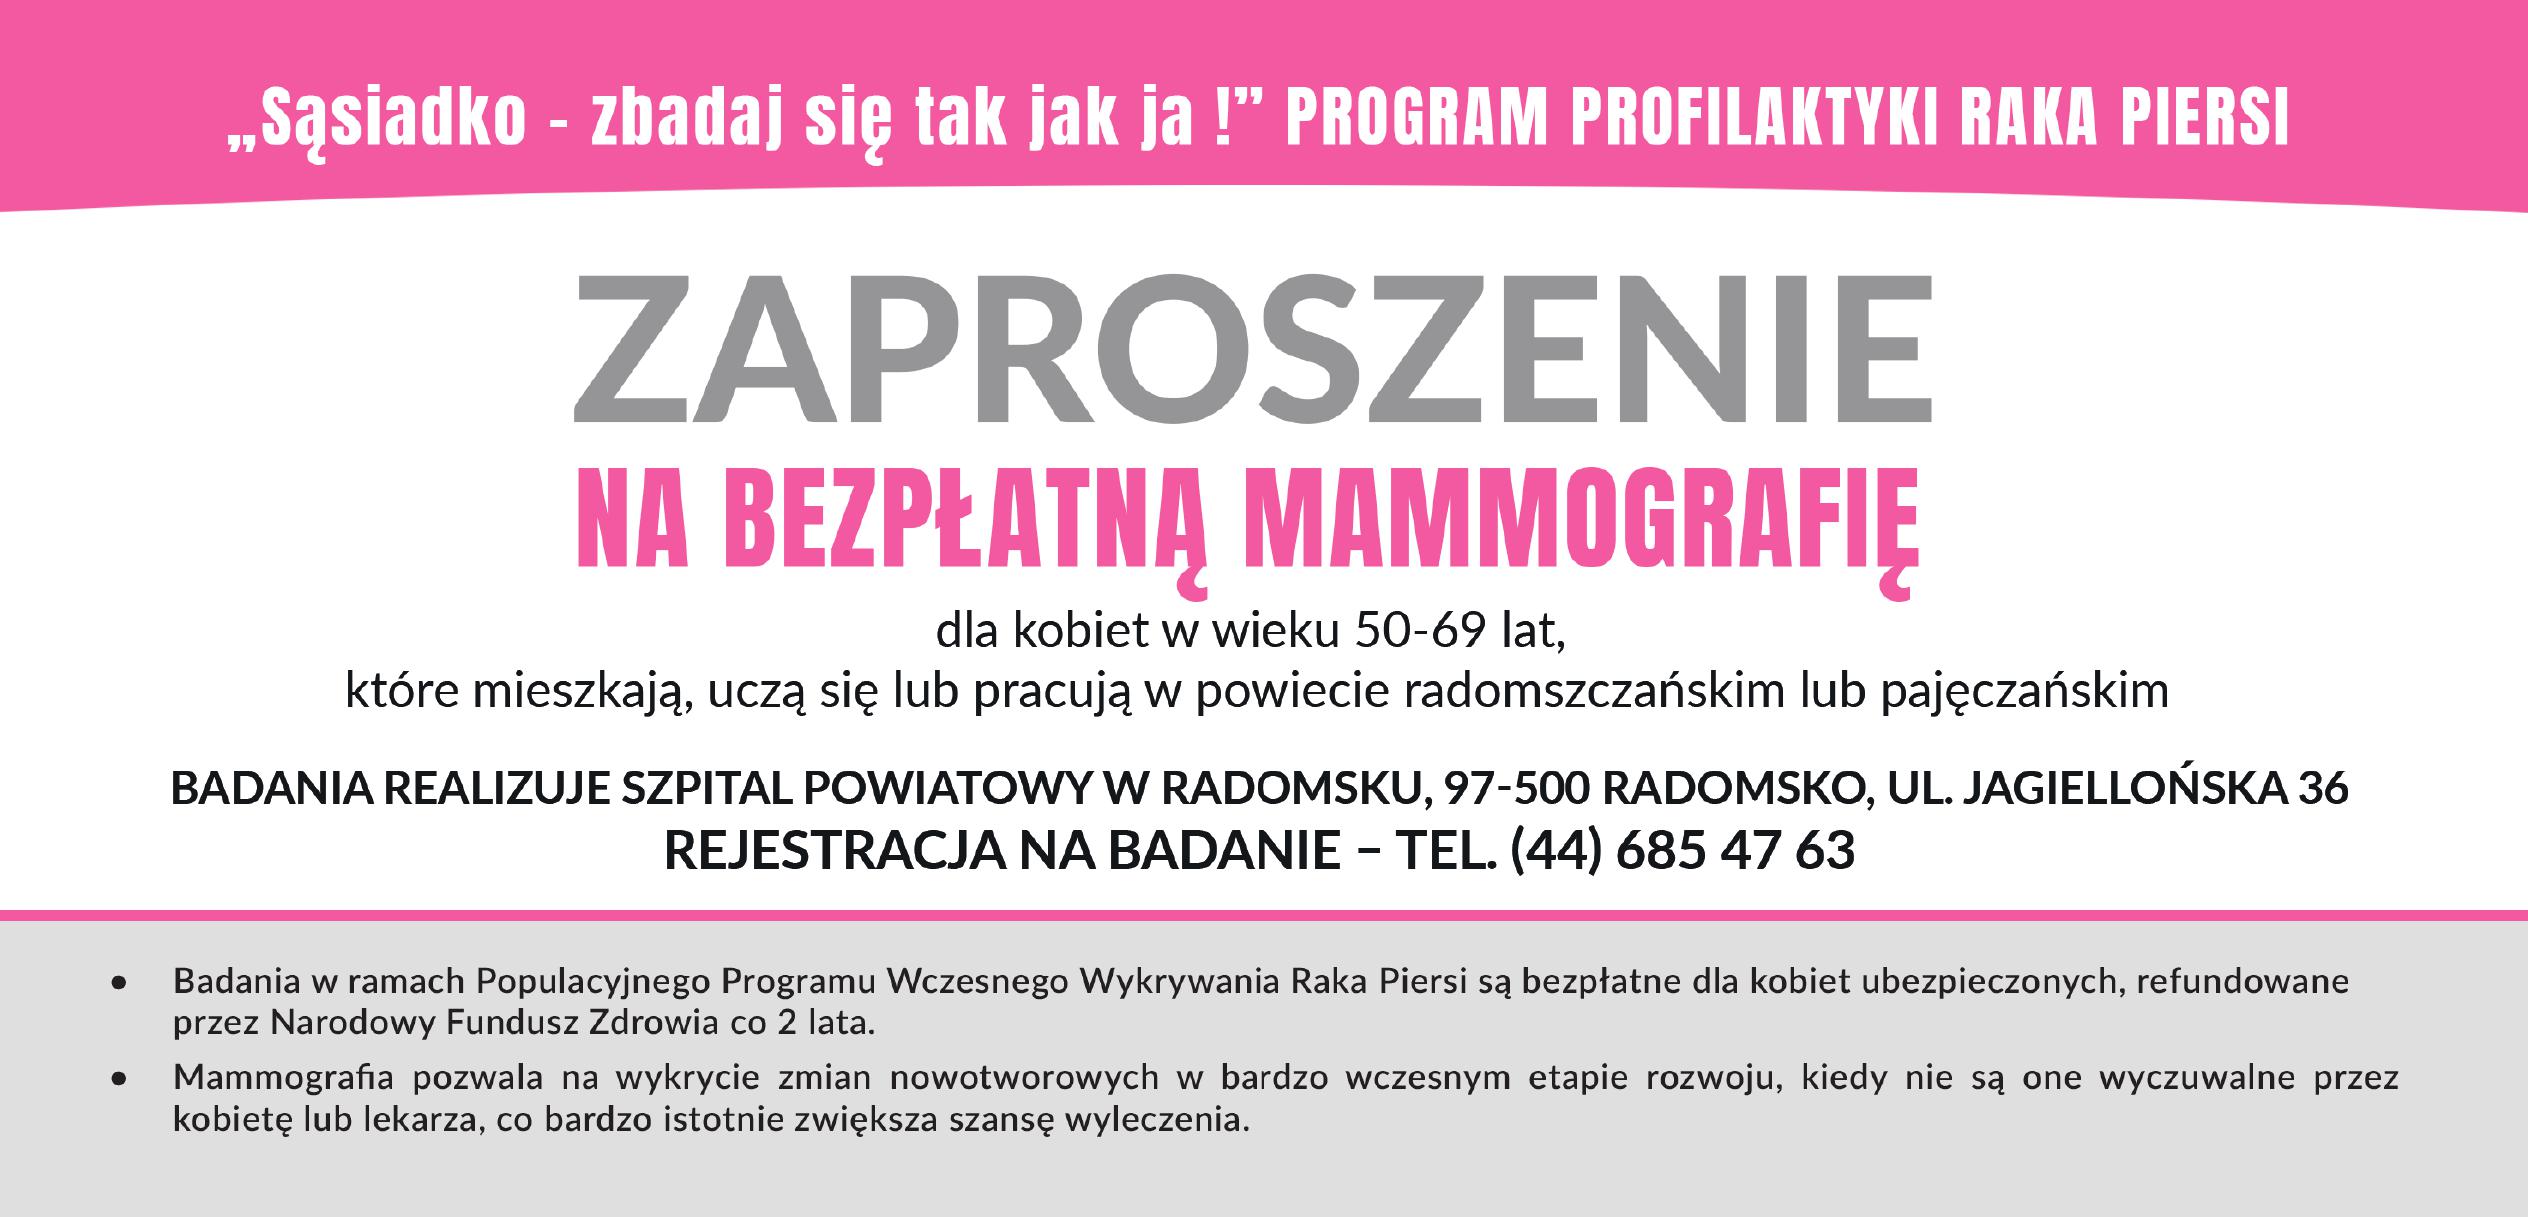 Infografika przedstawiająca zaproszenie na bezpłatną mammografię dla kobiet w wieku 50-69 lat 